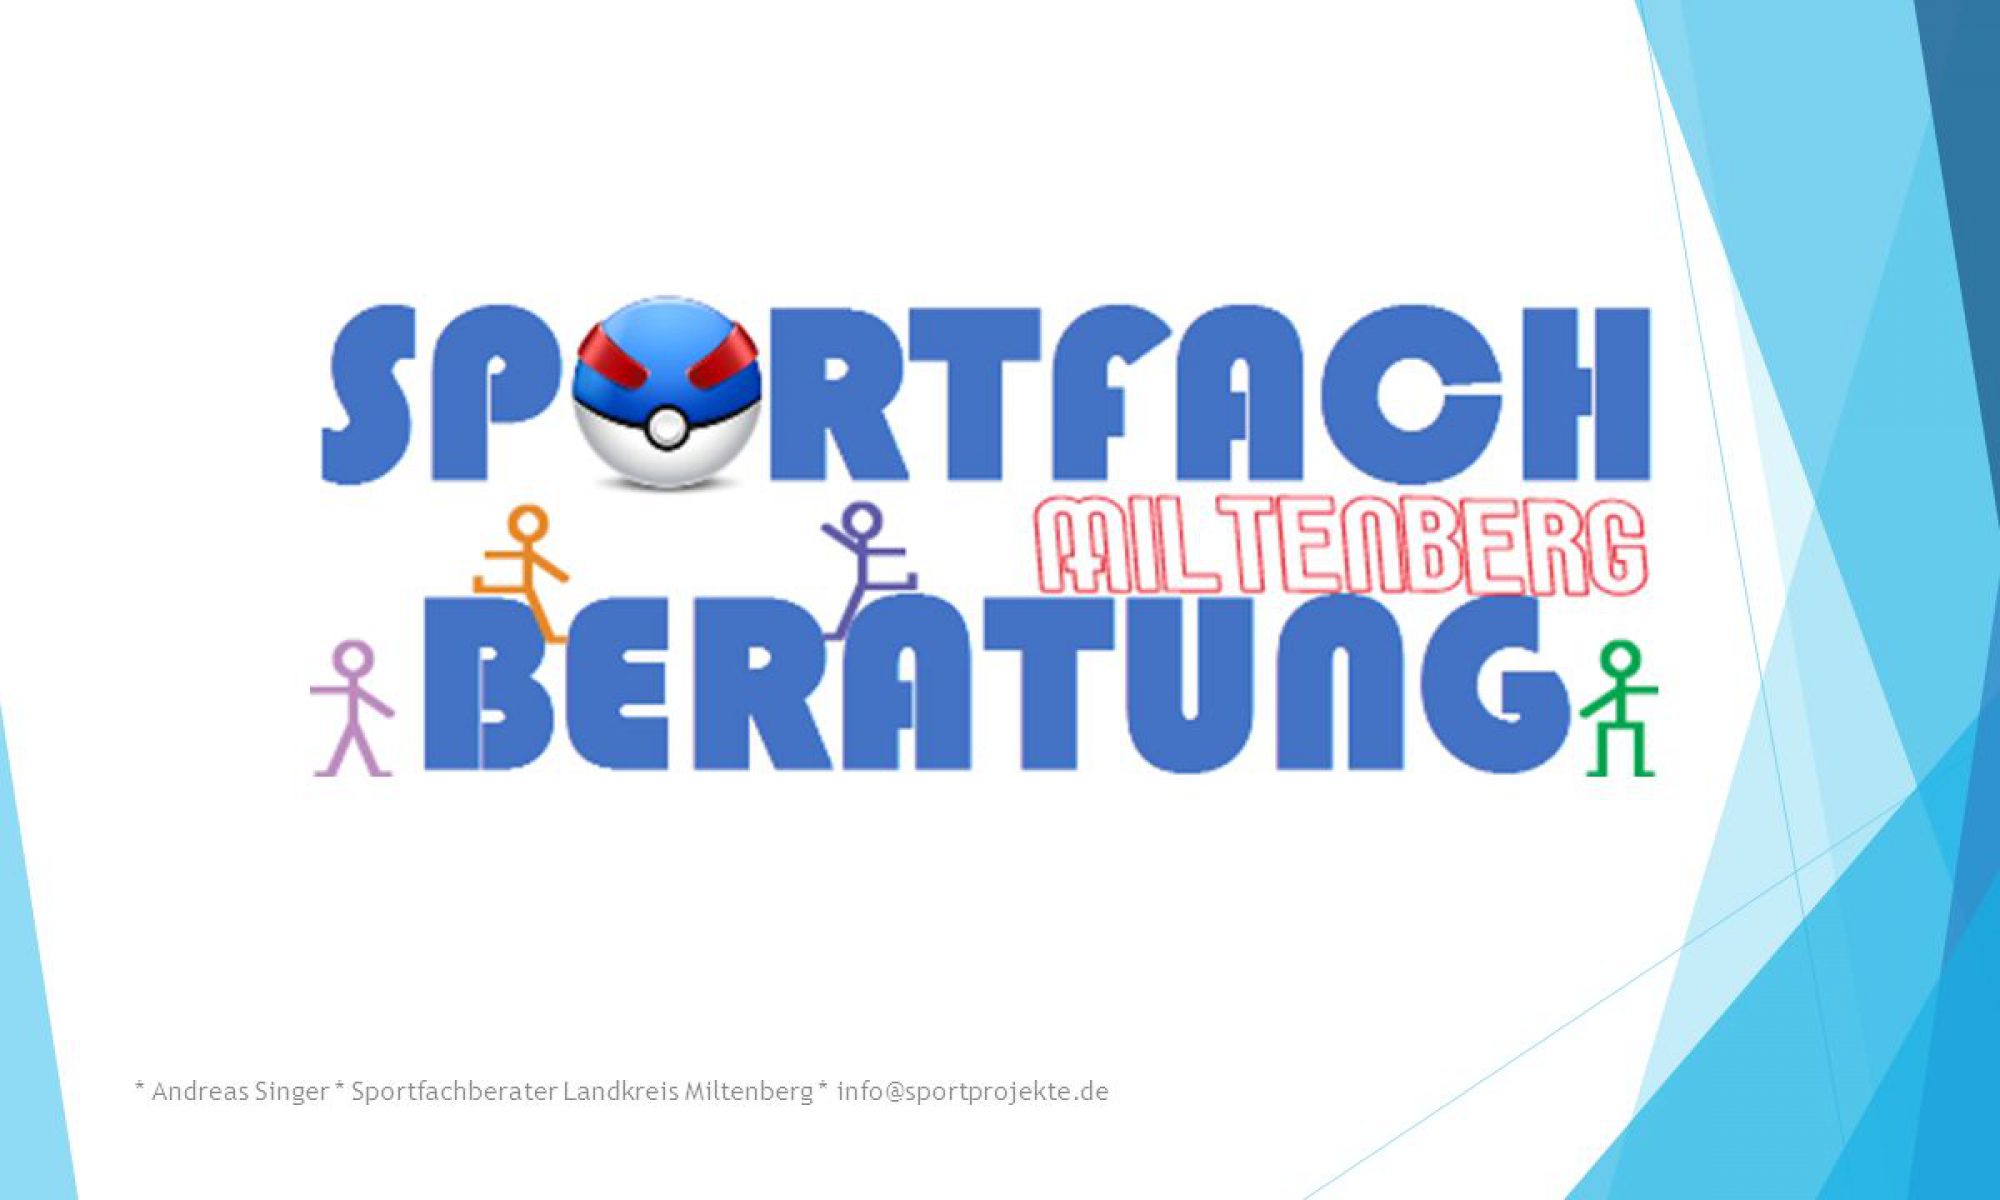 www.sportprojekte.de